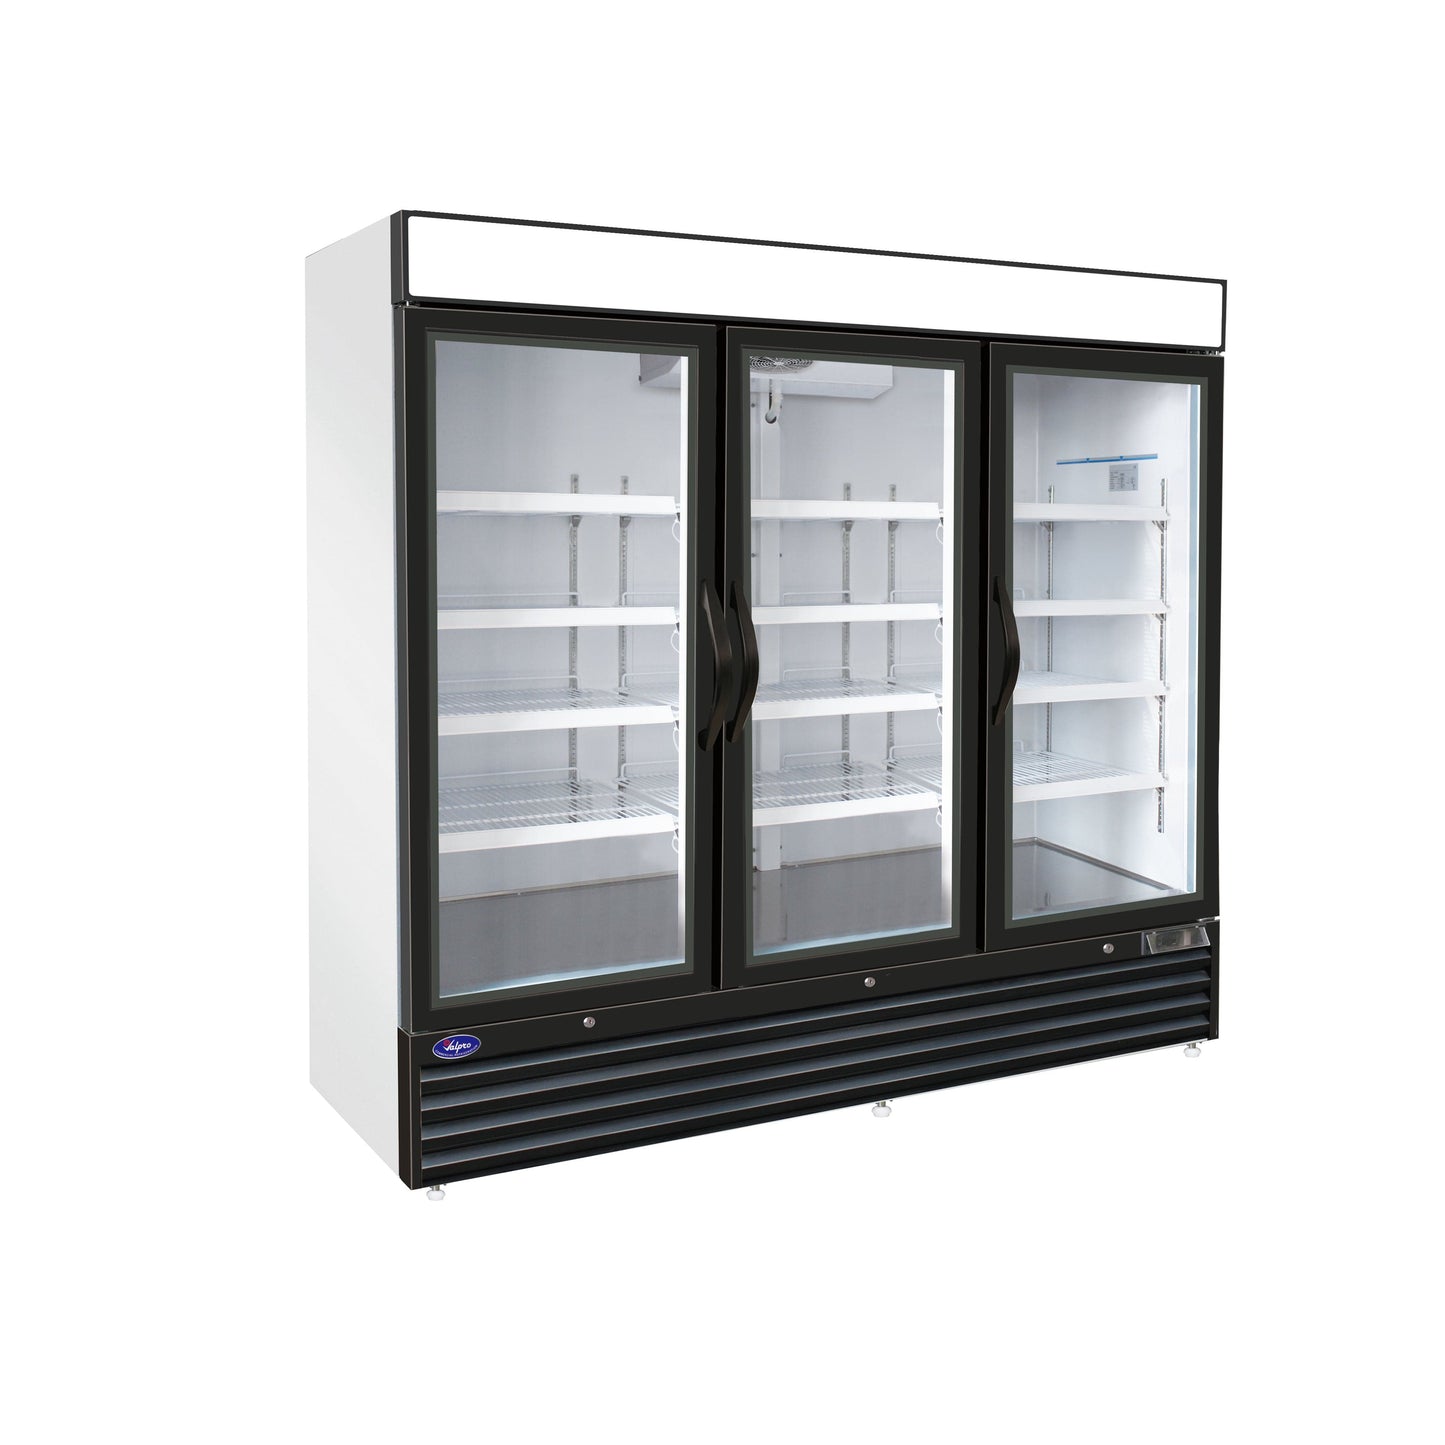 Valpro 72 cu.ft. Merchandiser Refrigerator With 3 Swing Glass Doors